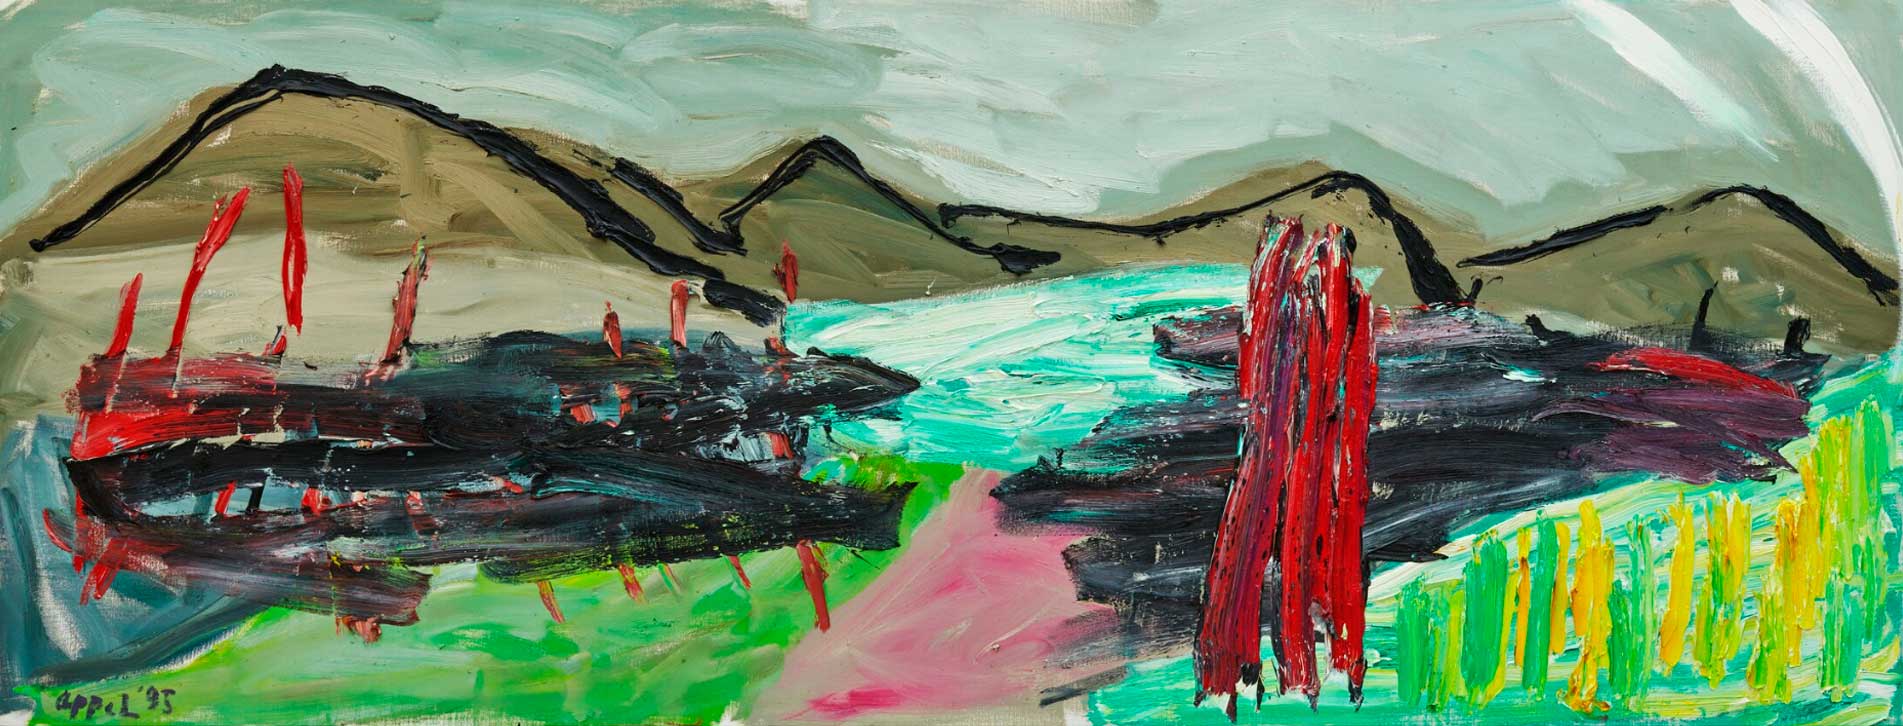 Karel Appel: Horizon of Tuscany No 18